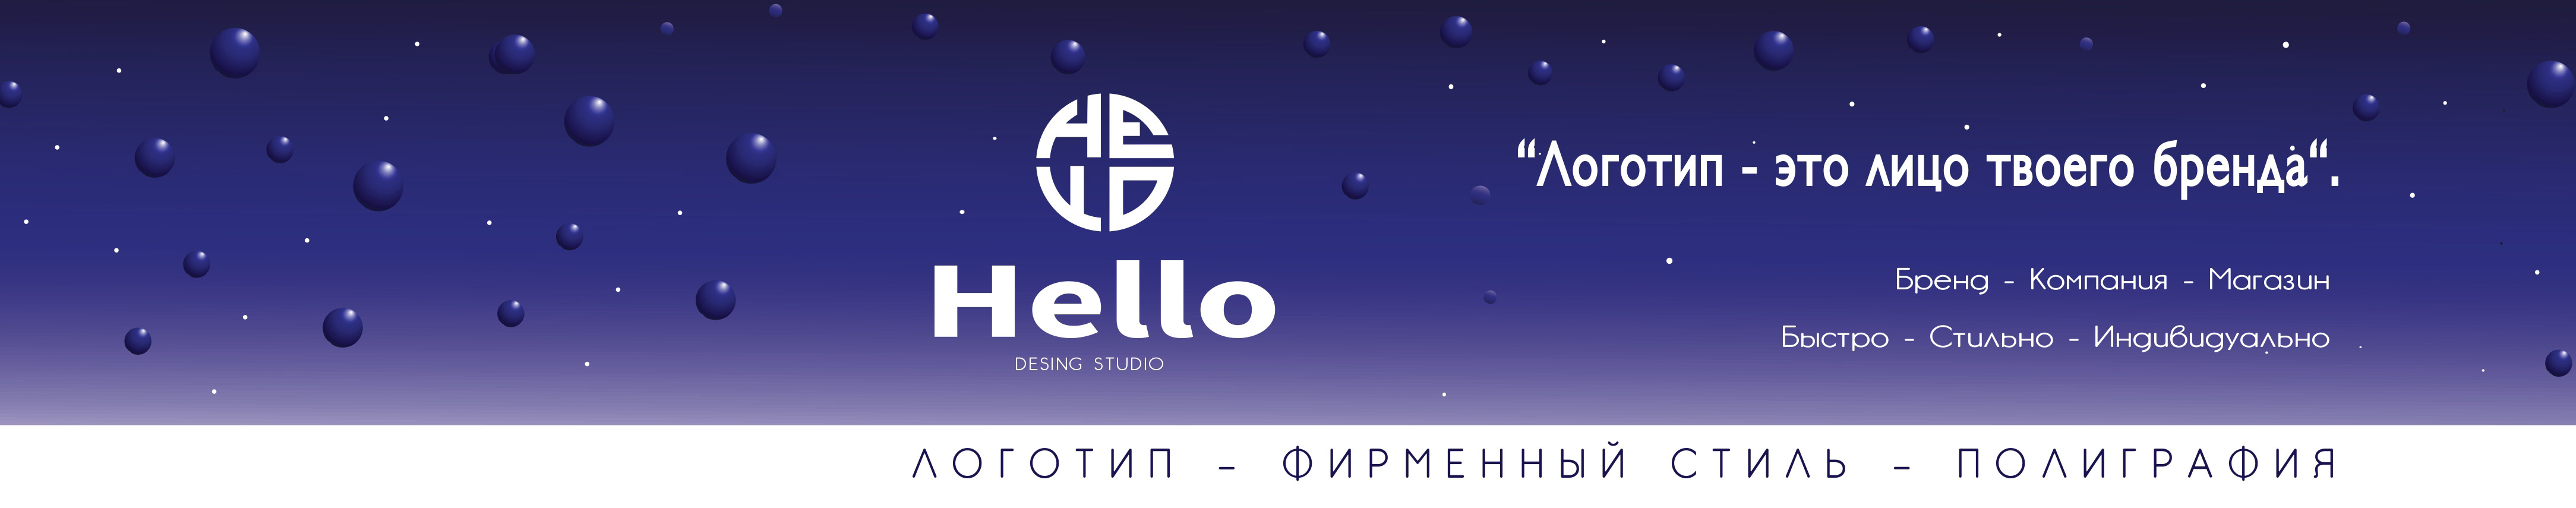 Ангелина Матвеева's profile banner